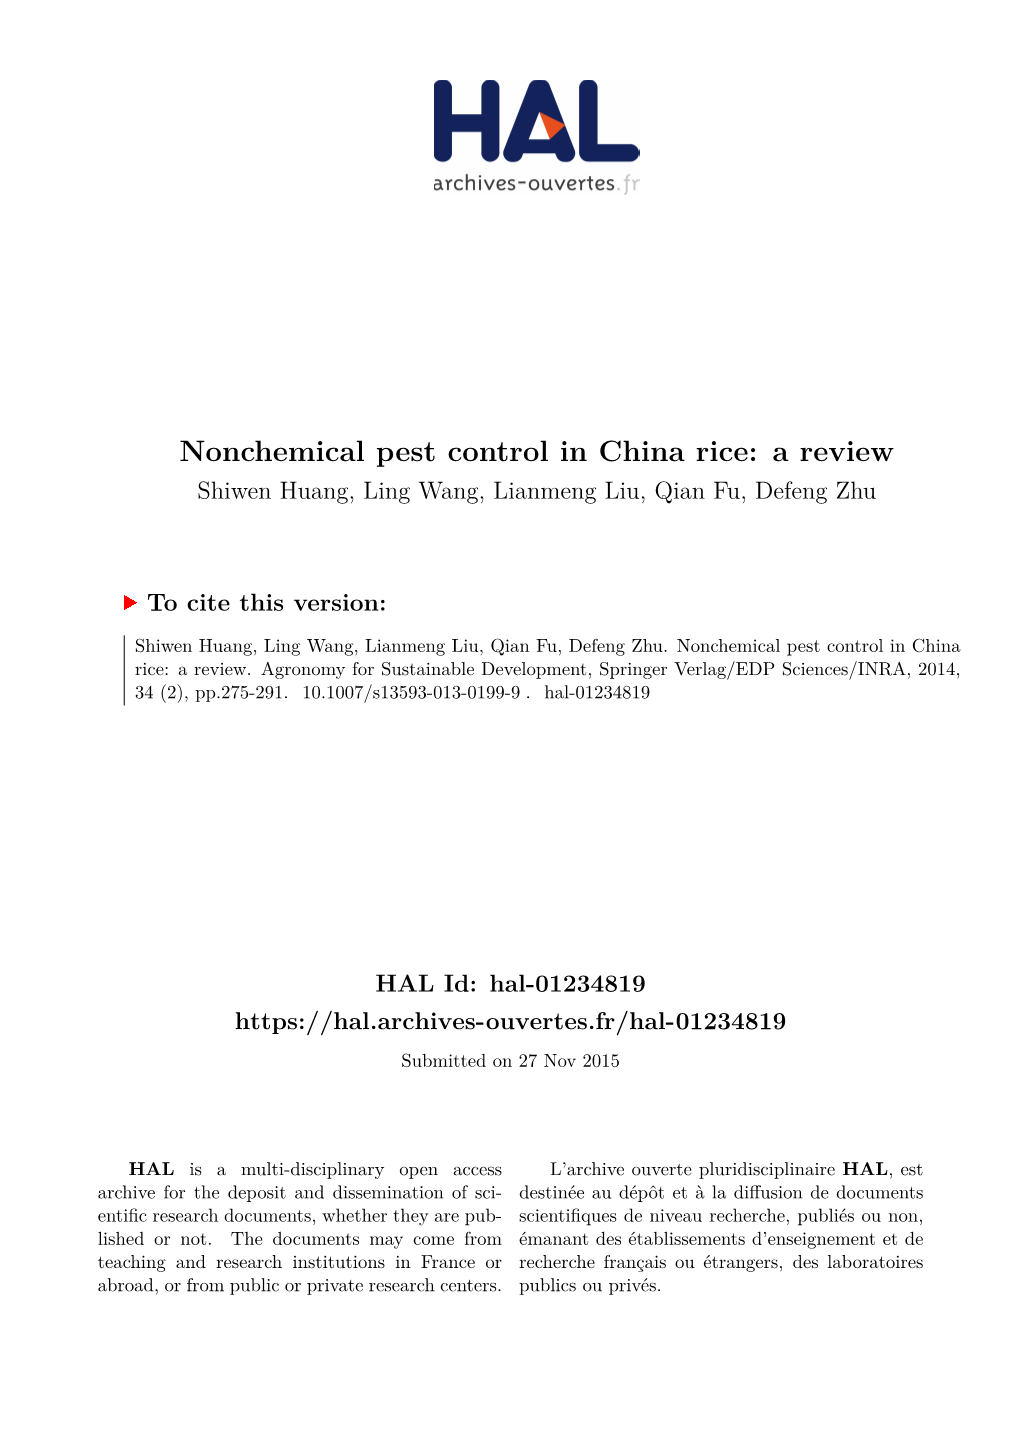 Nonchemical Pest Control in China Rice: a Review Shiwen Huang, Ling Wang, Lianmeng Liu, Qian Fu, Defeng Zhu